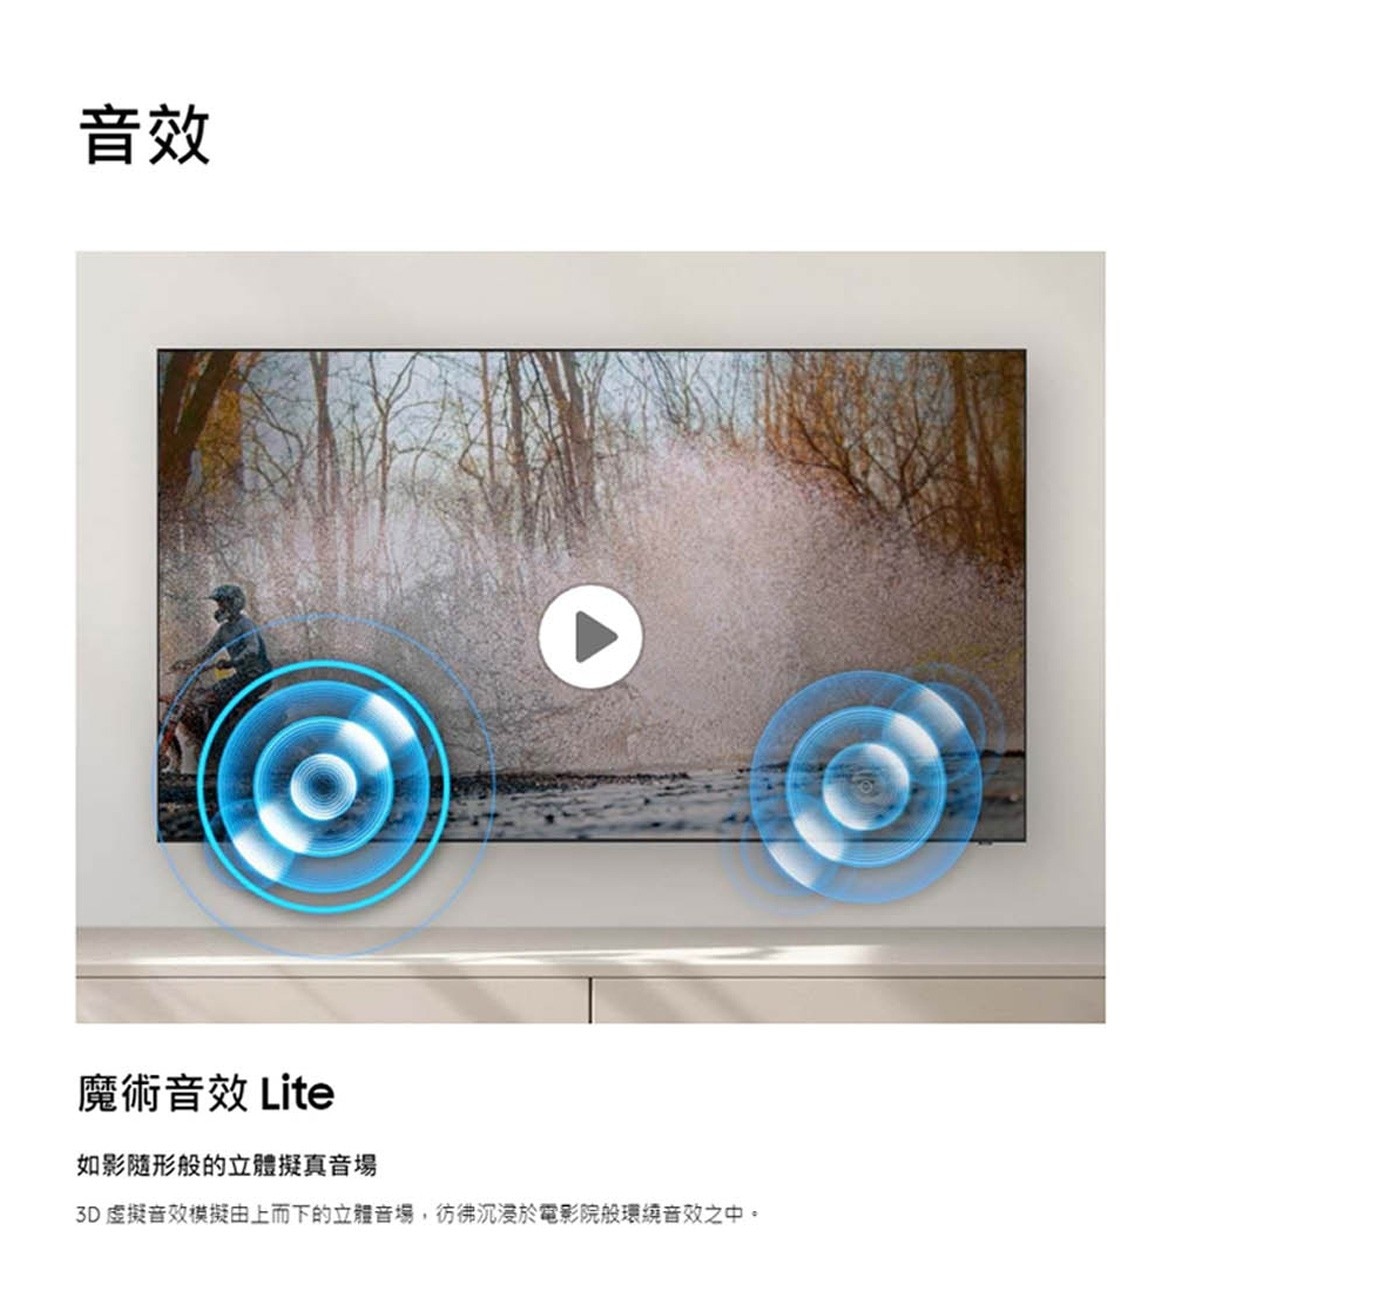 Samsung 75吋 4K UHD 電視 UA75CU8000XXZW魔術音效Lite如影隨形般的立體擬真音場